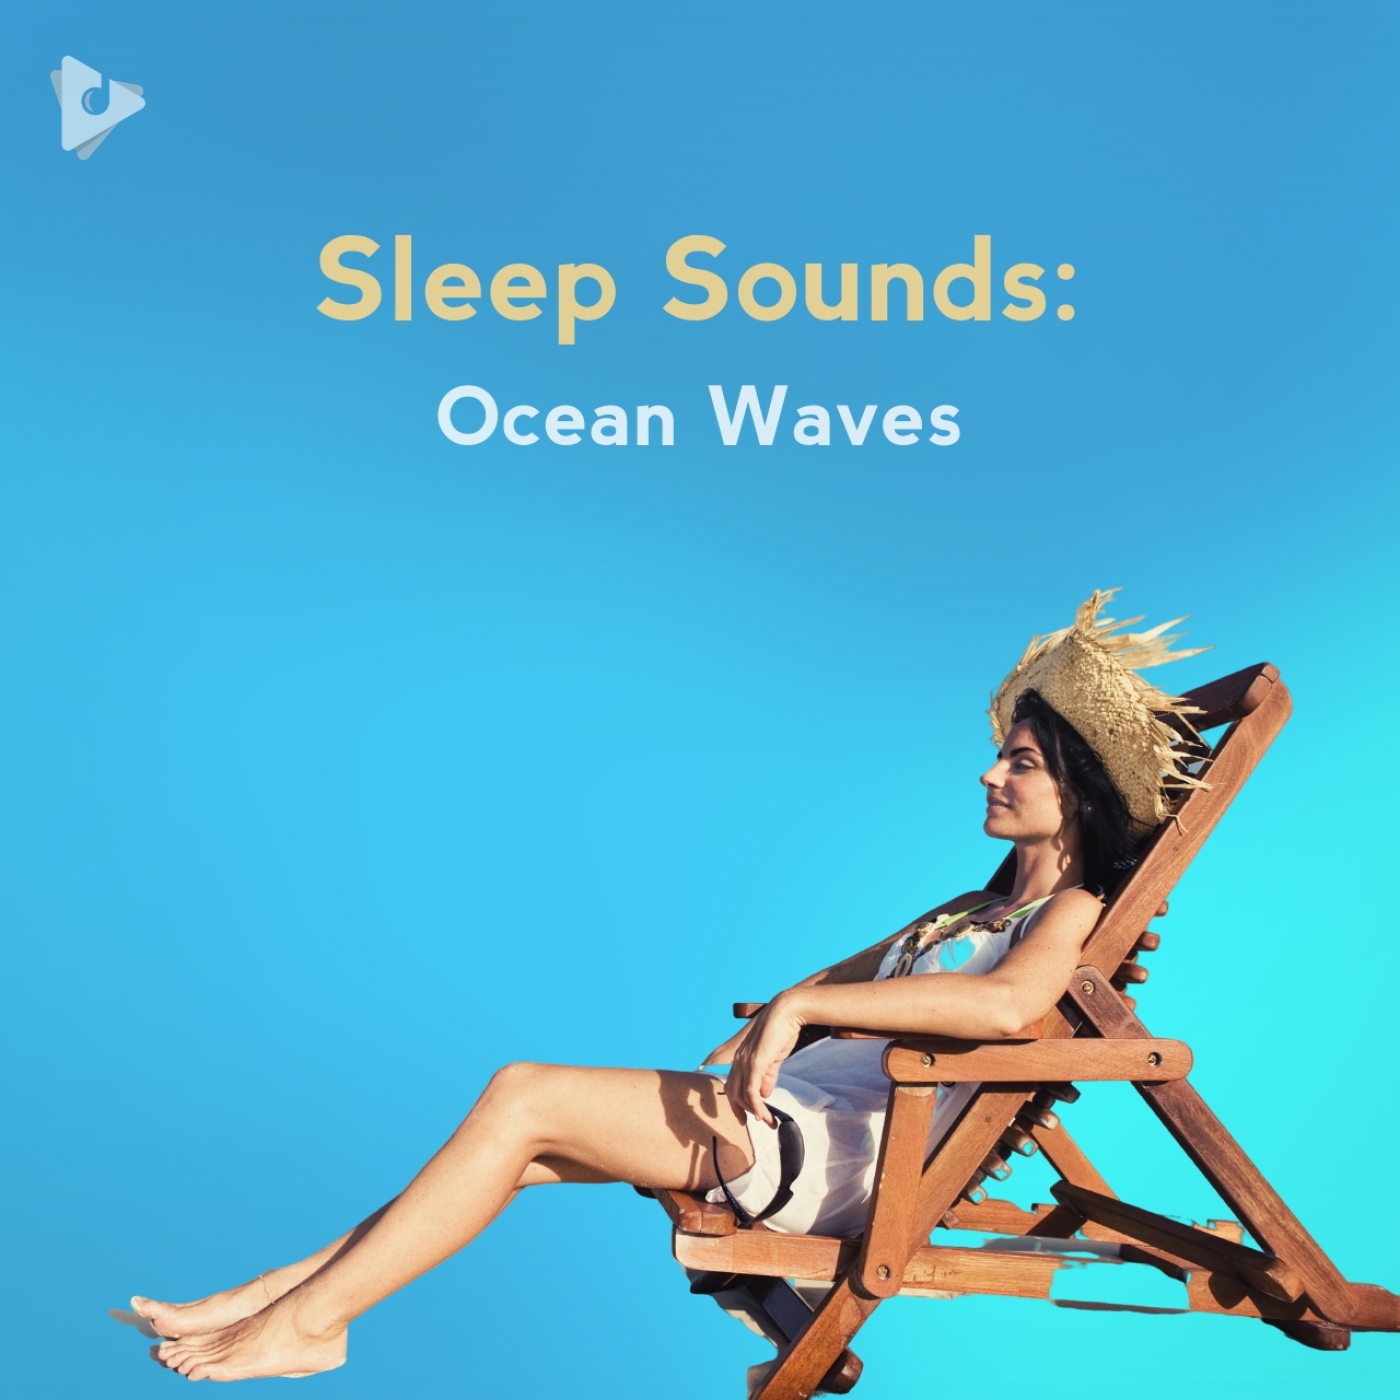 ocean sound for deep sleep